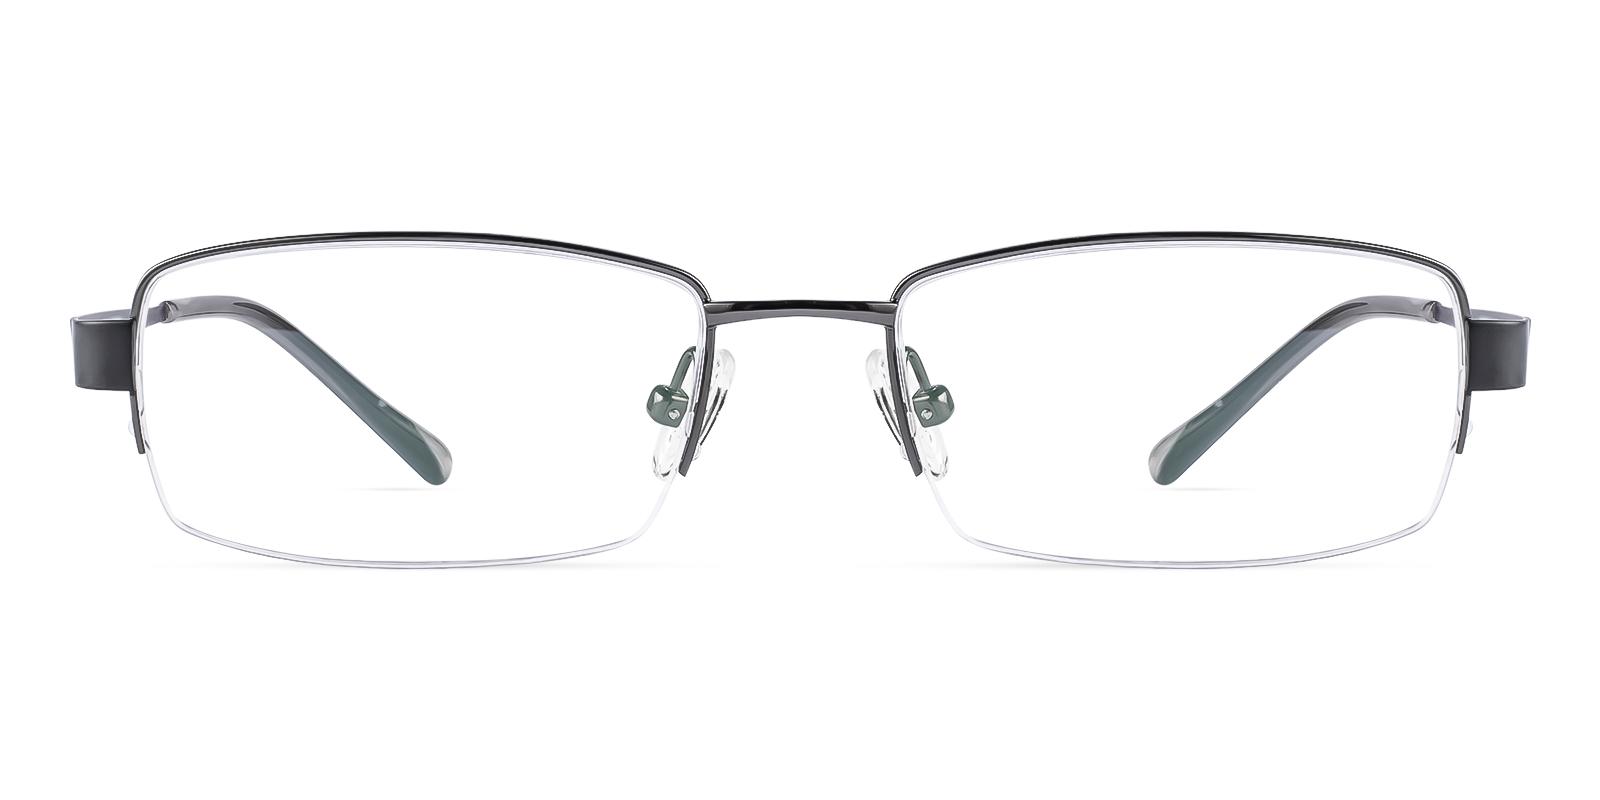 Battar Black Titanium Eyeglasses , NosePads Frames from ABBE Glasses